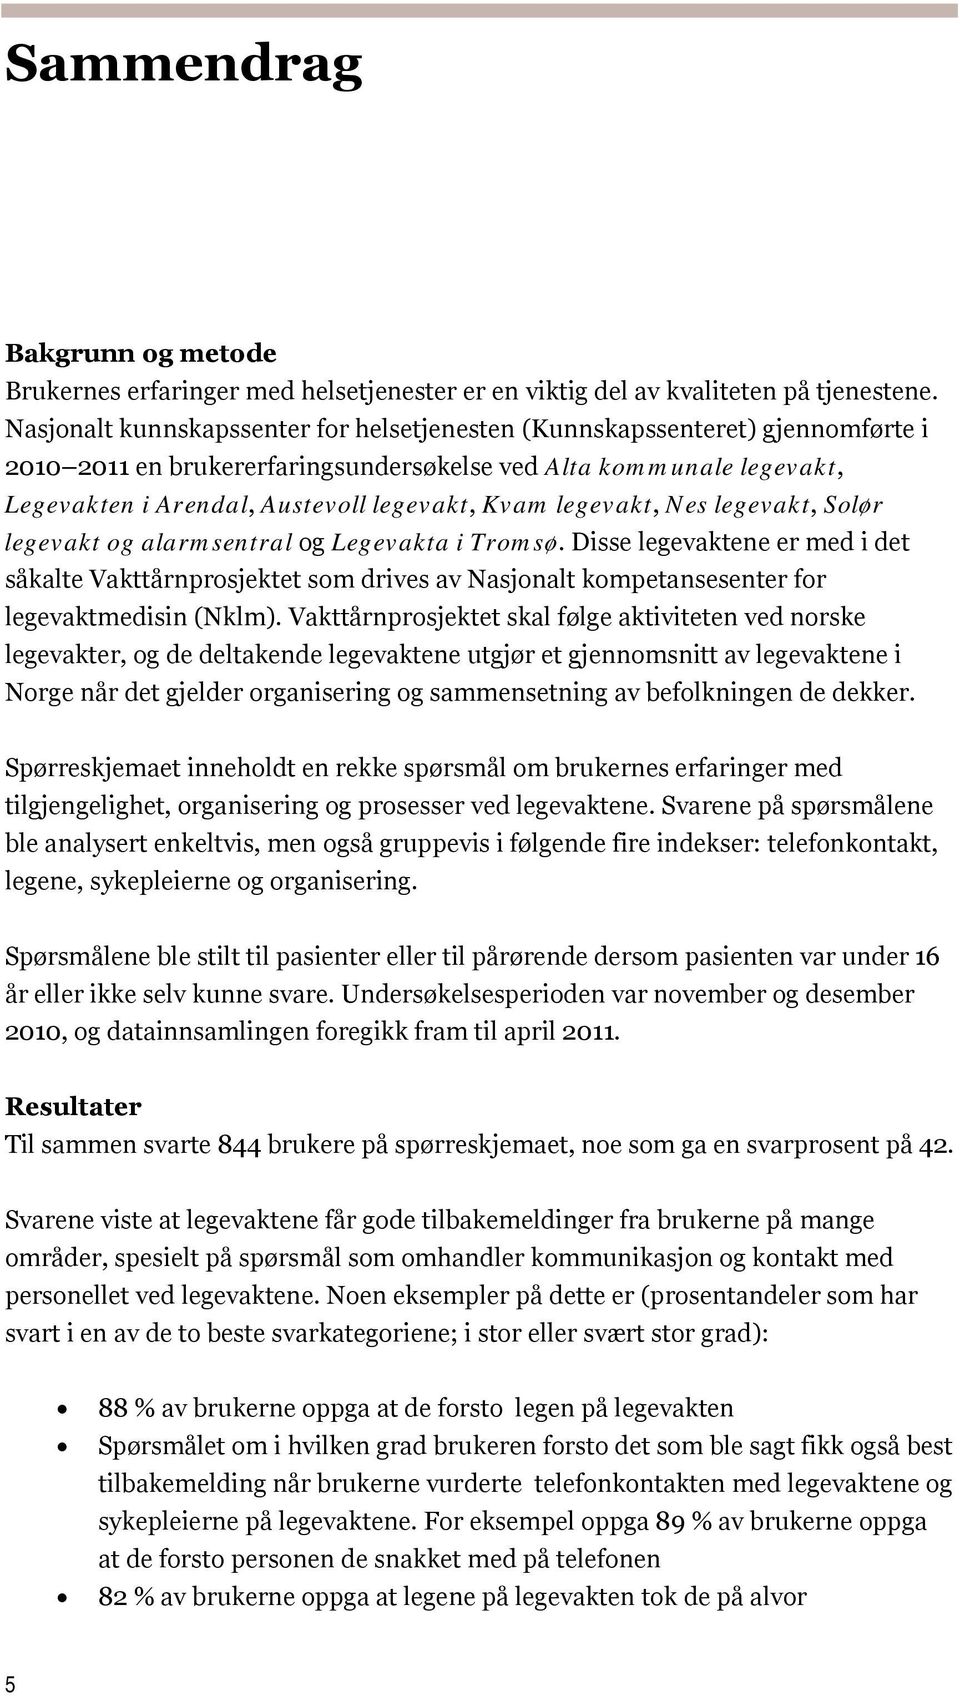 legevakt, Nes legevakt, Solør legevakt og alarmsentral og Legevakta i Tromsø.